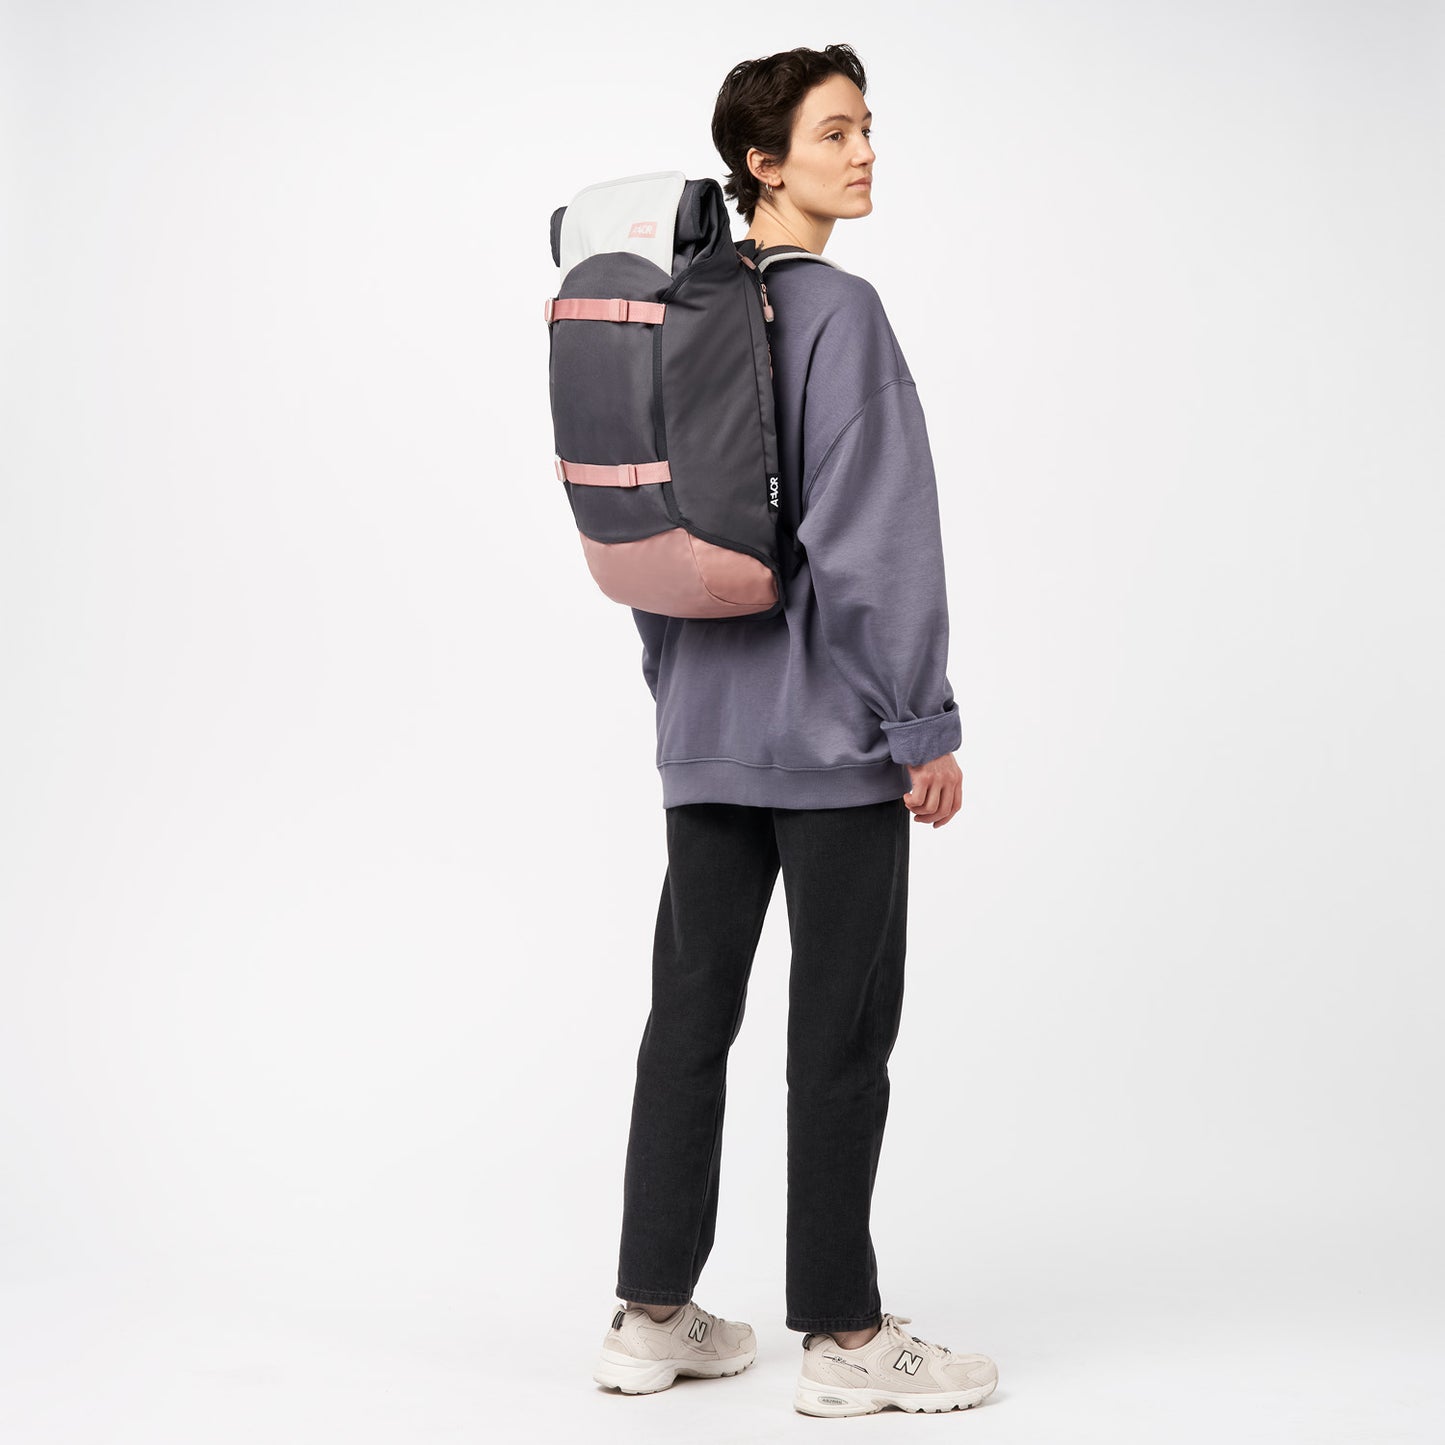 AEVOR-backpack-Trip-Pack-Chilled-Rose-model-side